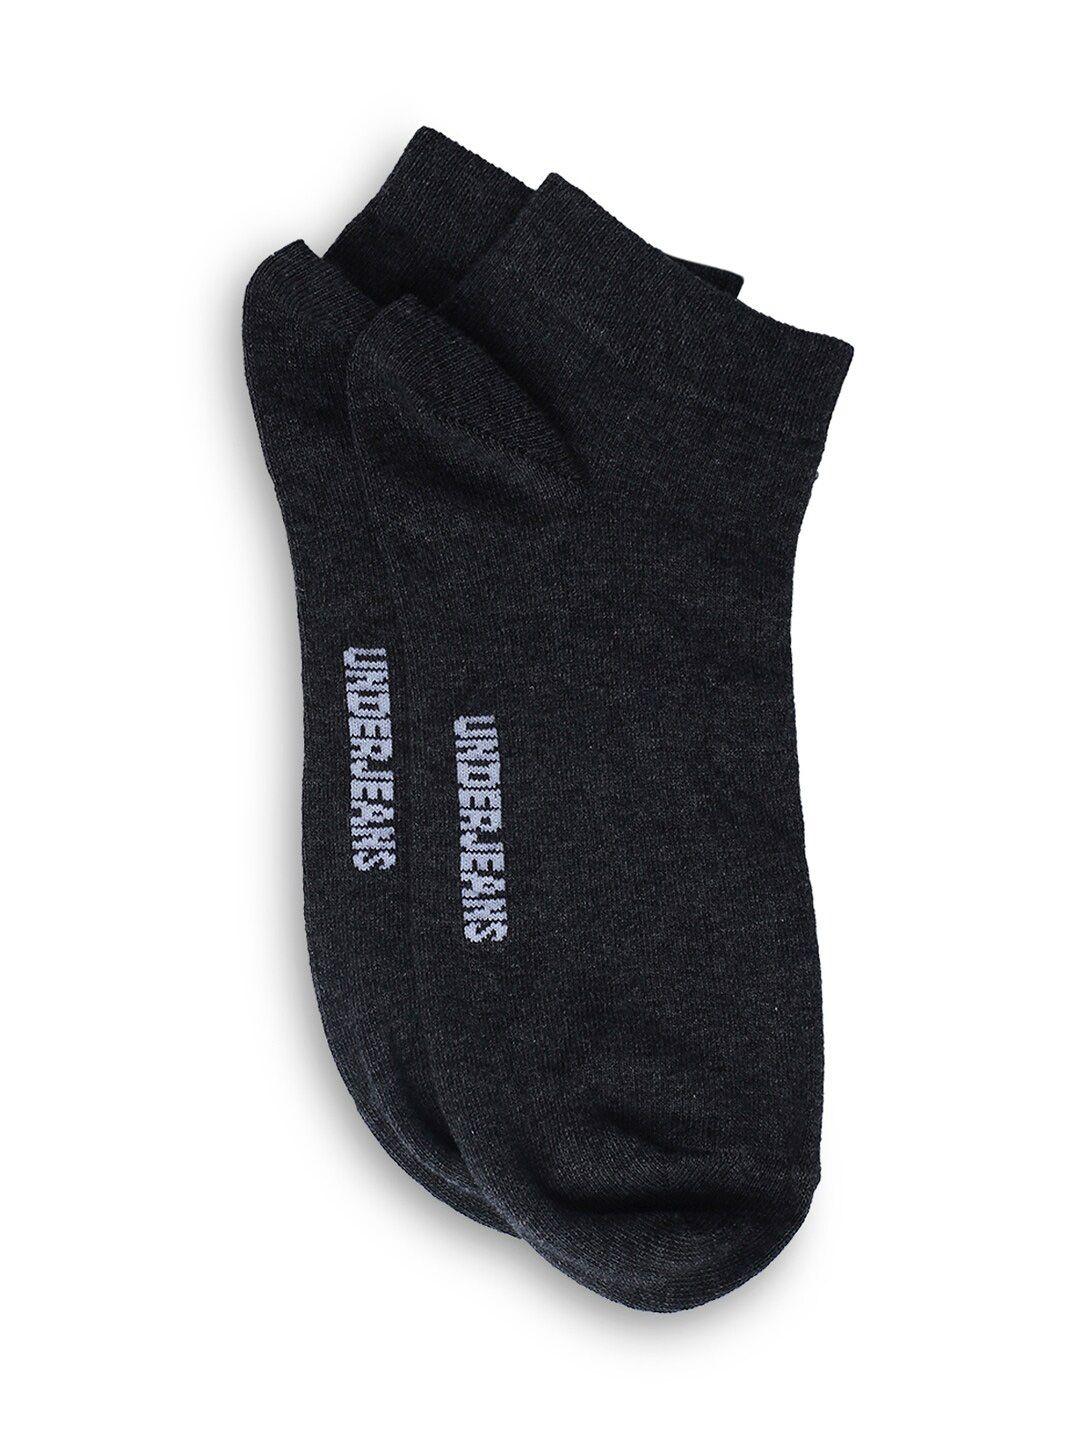 underjeans-by-spykar-men-pack-of-2-ankle-length-socks